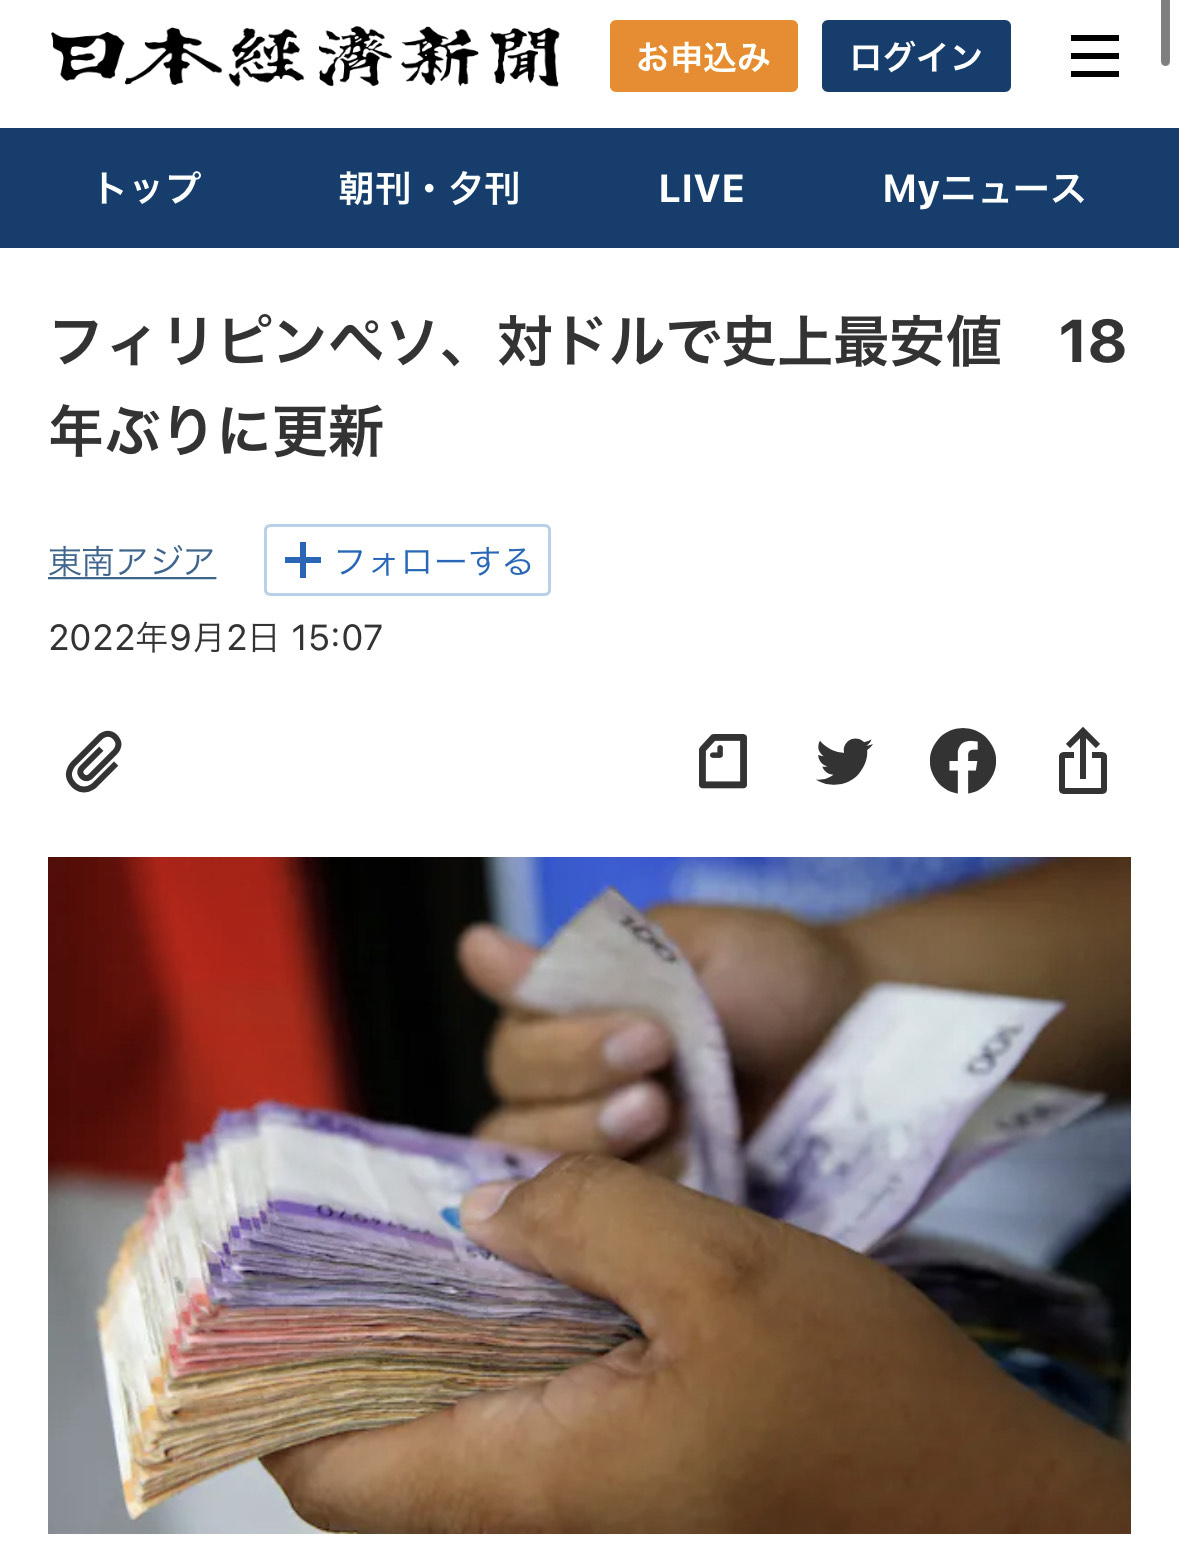 出典: 日本経済新聞